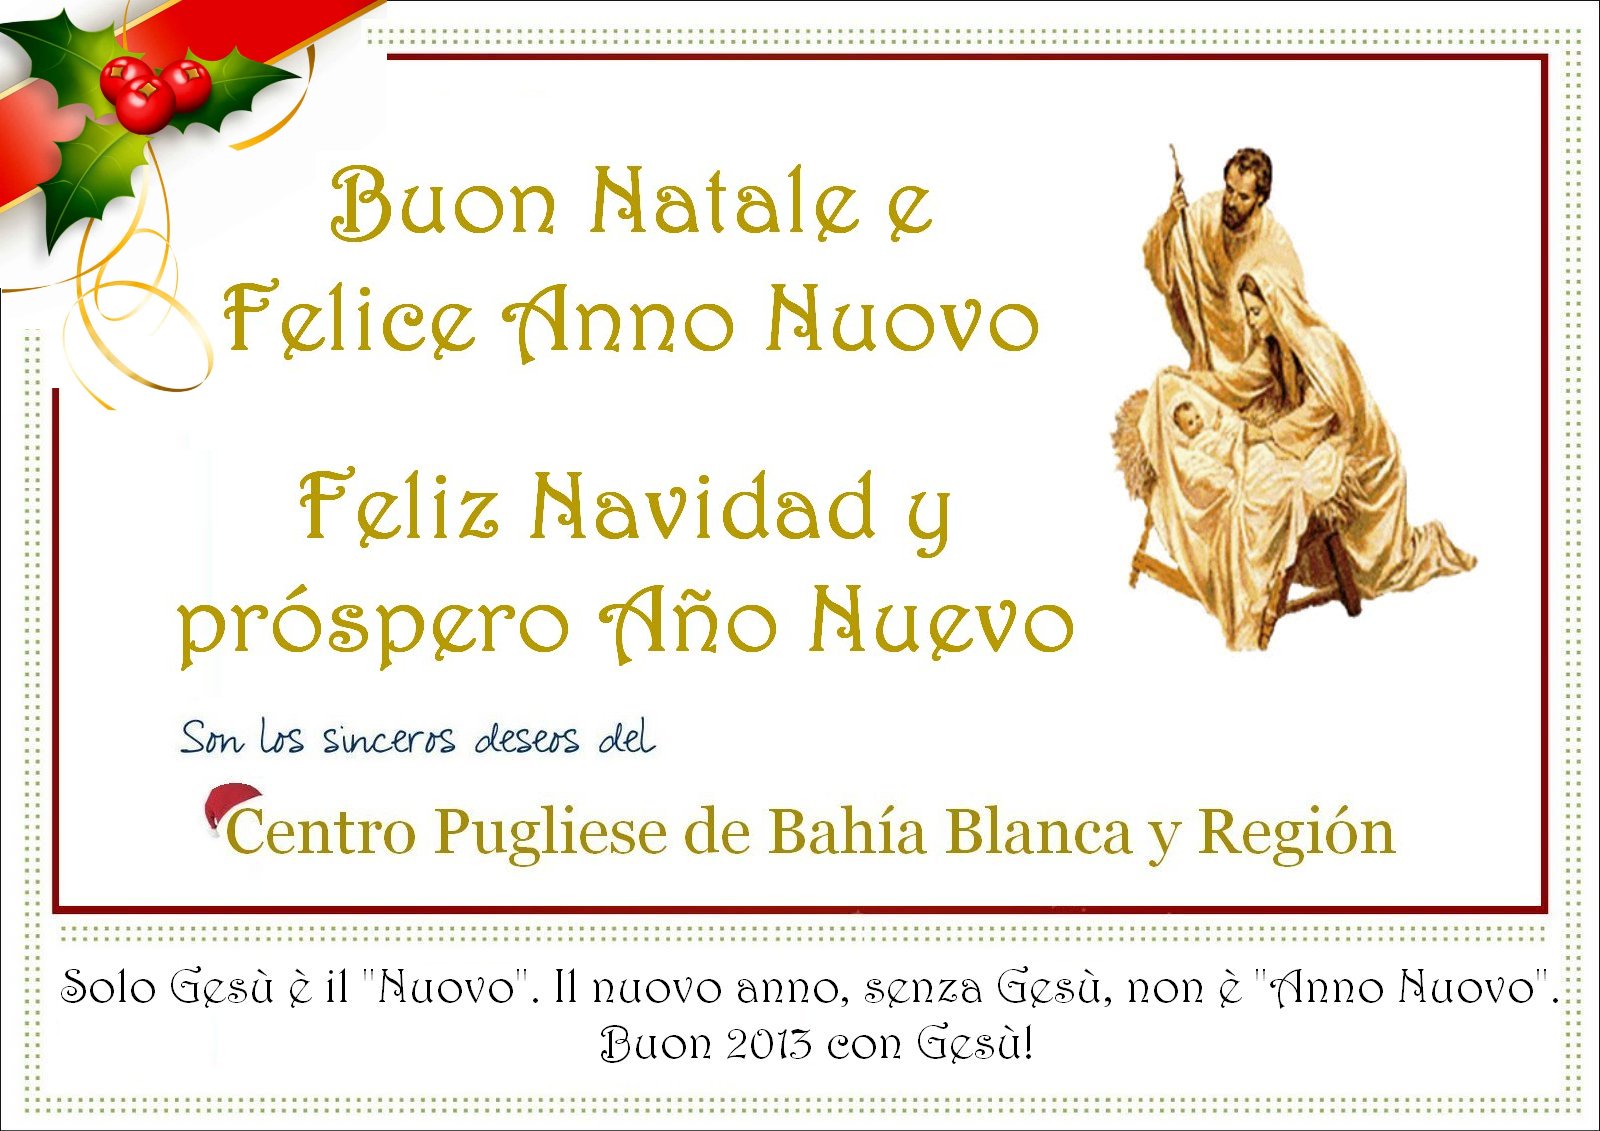 Buon Natale In Pugliese.Centro Pugliese De Bahia Blanca Y Region Buon Natale E Felice Anno Nuovo